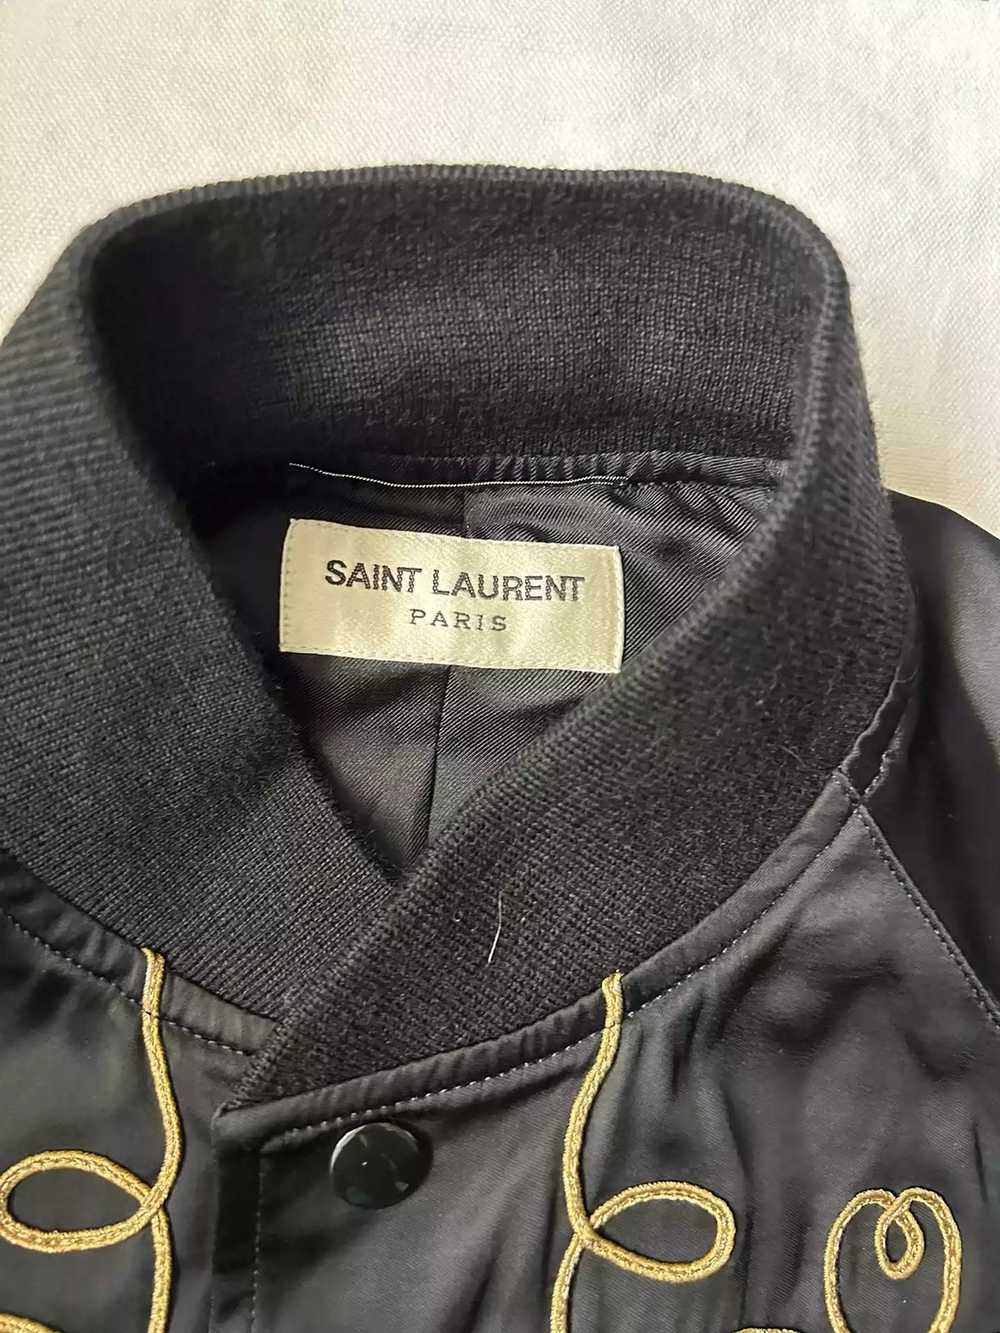 Yves Saint Laurent saint laurent suit - image 4